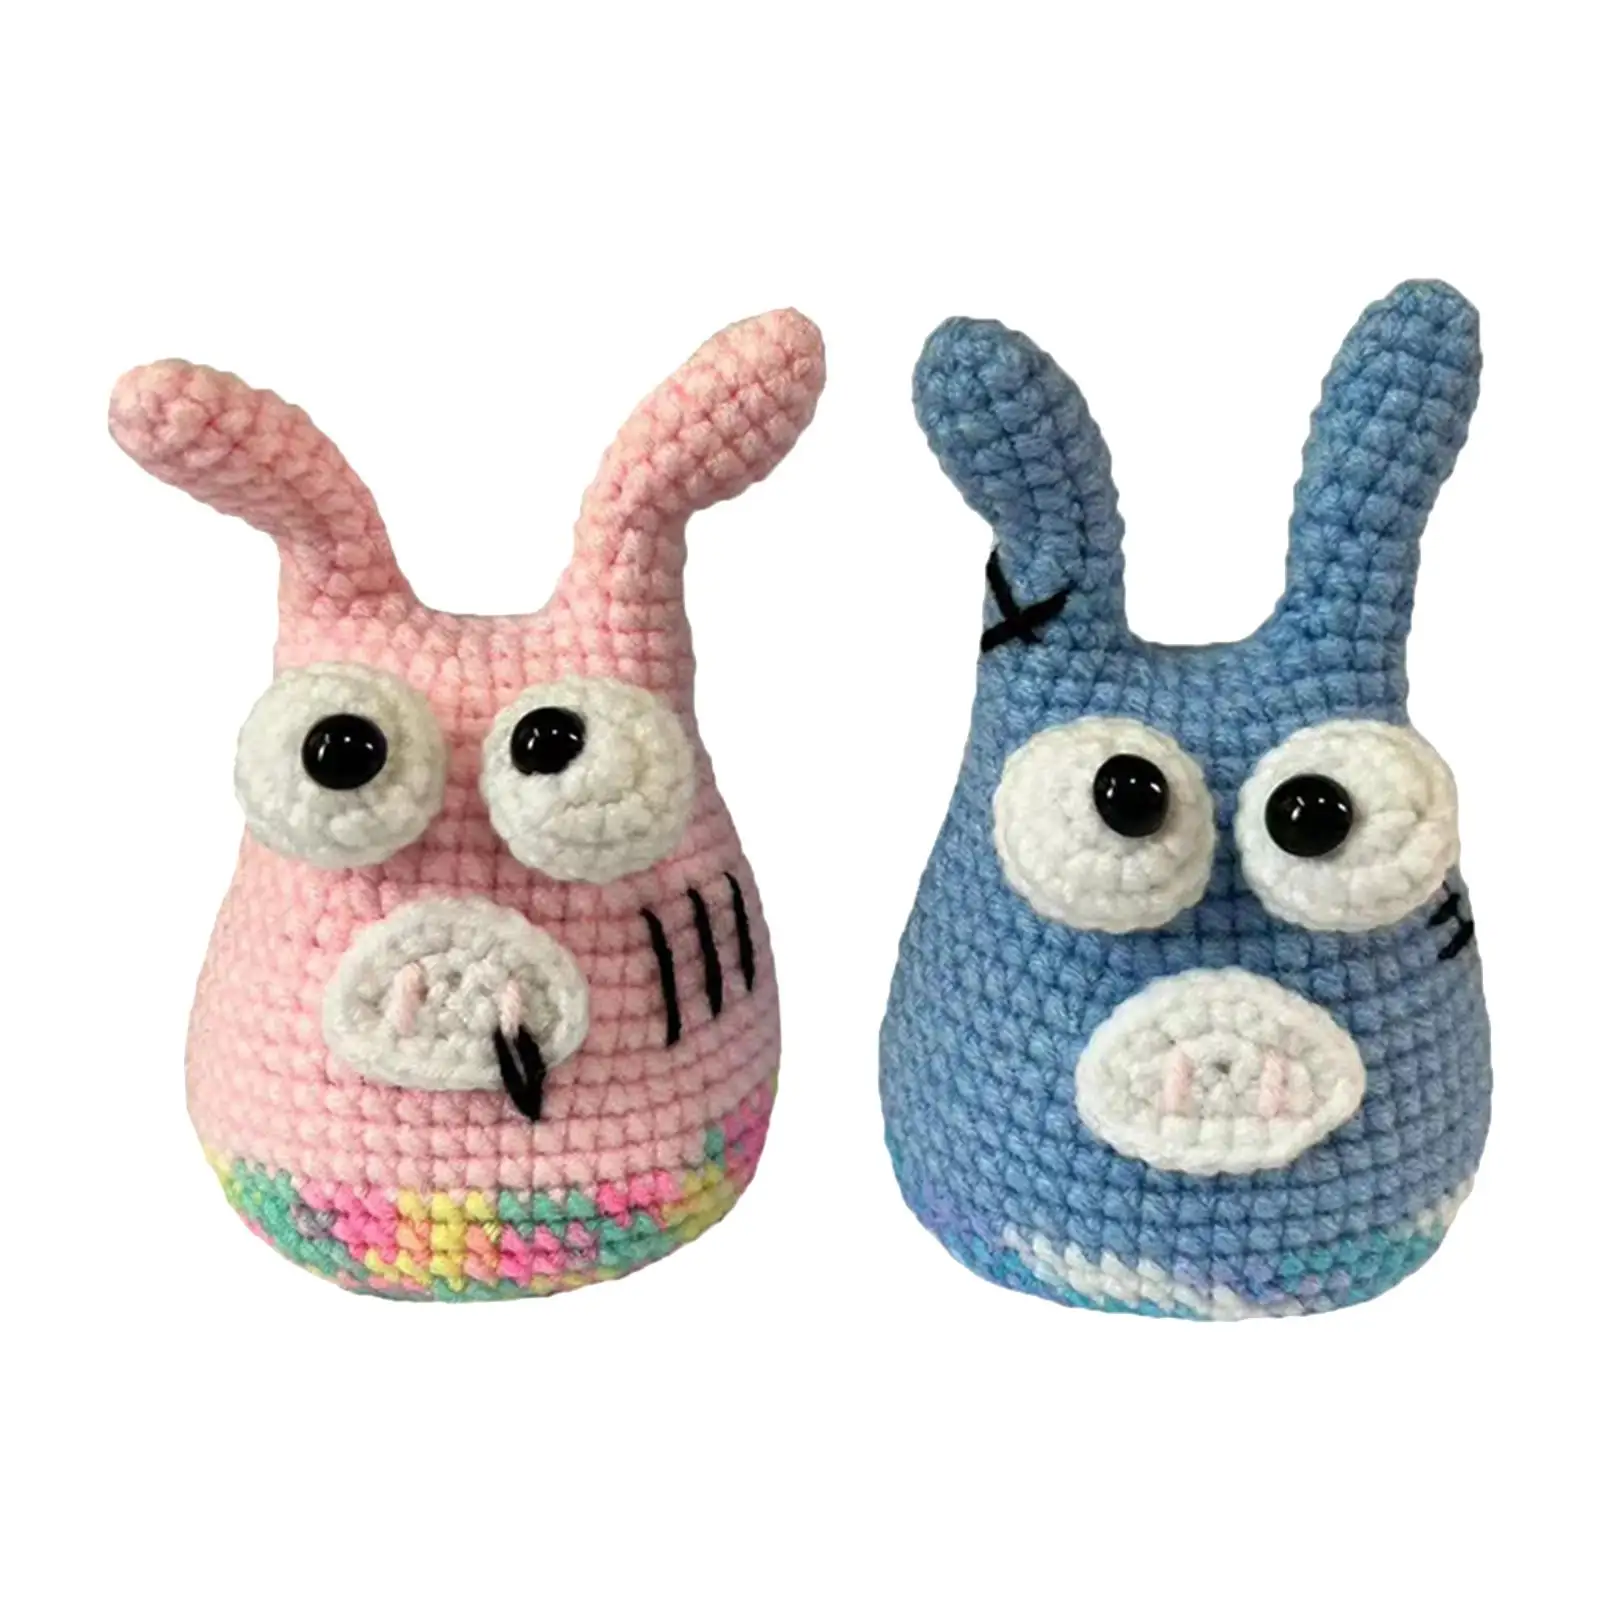 Crochet Animal Kit Stuffed Animal Knitting Set Needlework Crochet Kit for Beginners for Kids Adults Knitting Lover Birthday Gift